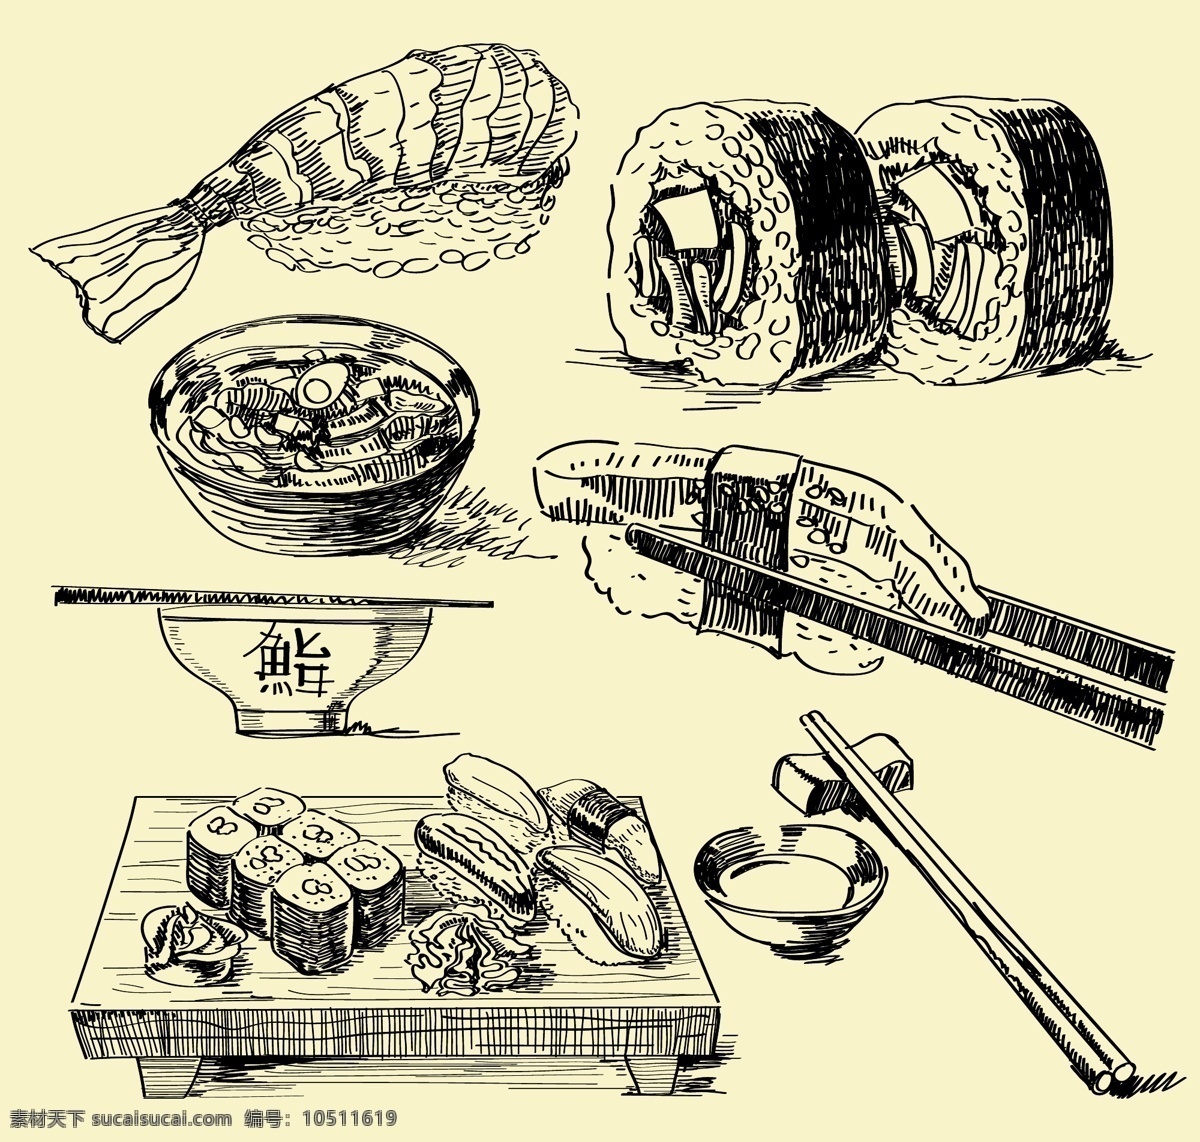 日本料理 线条 插画 矢量 筷子 拉面 料理 日本 三文鱼 食物 矢量素材 寿司 矢量图 日常生活